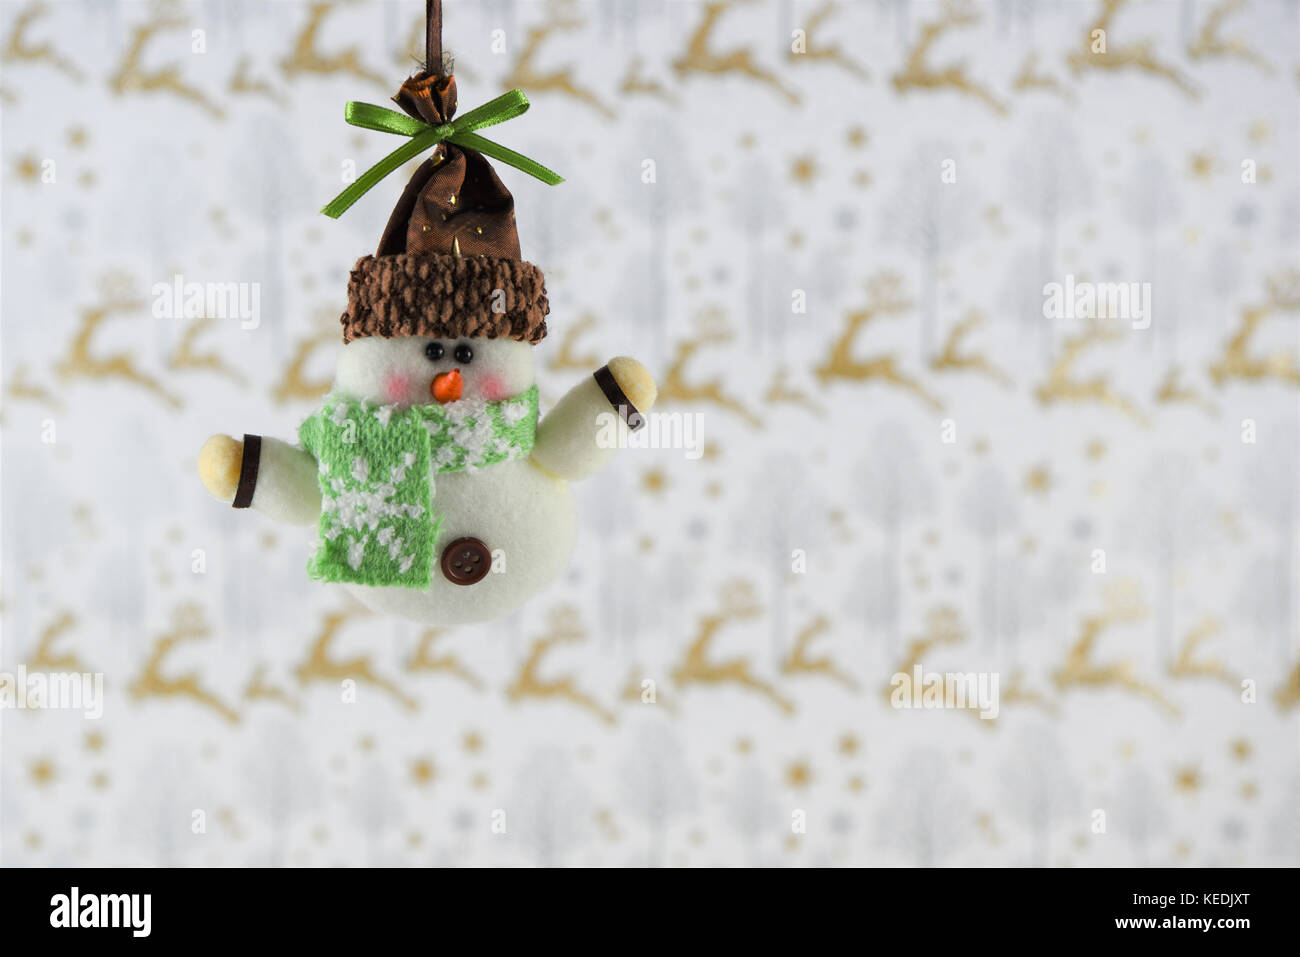 Photographie image de Noël de Noël la décoration de raccrocher de cute snowman in hat foulard avec gold glitter background papier cadeaux de noël renne Banque D'Images